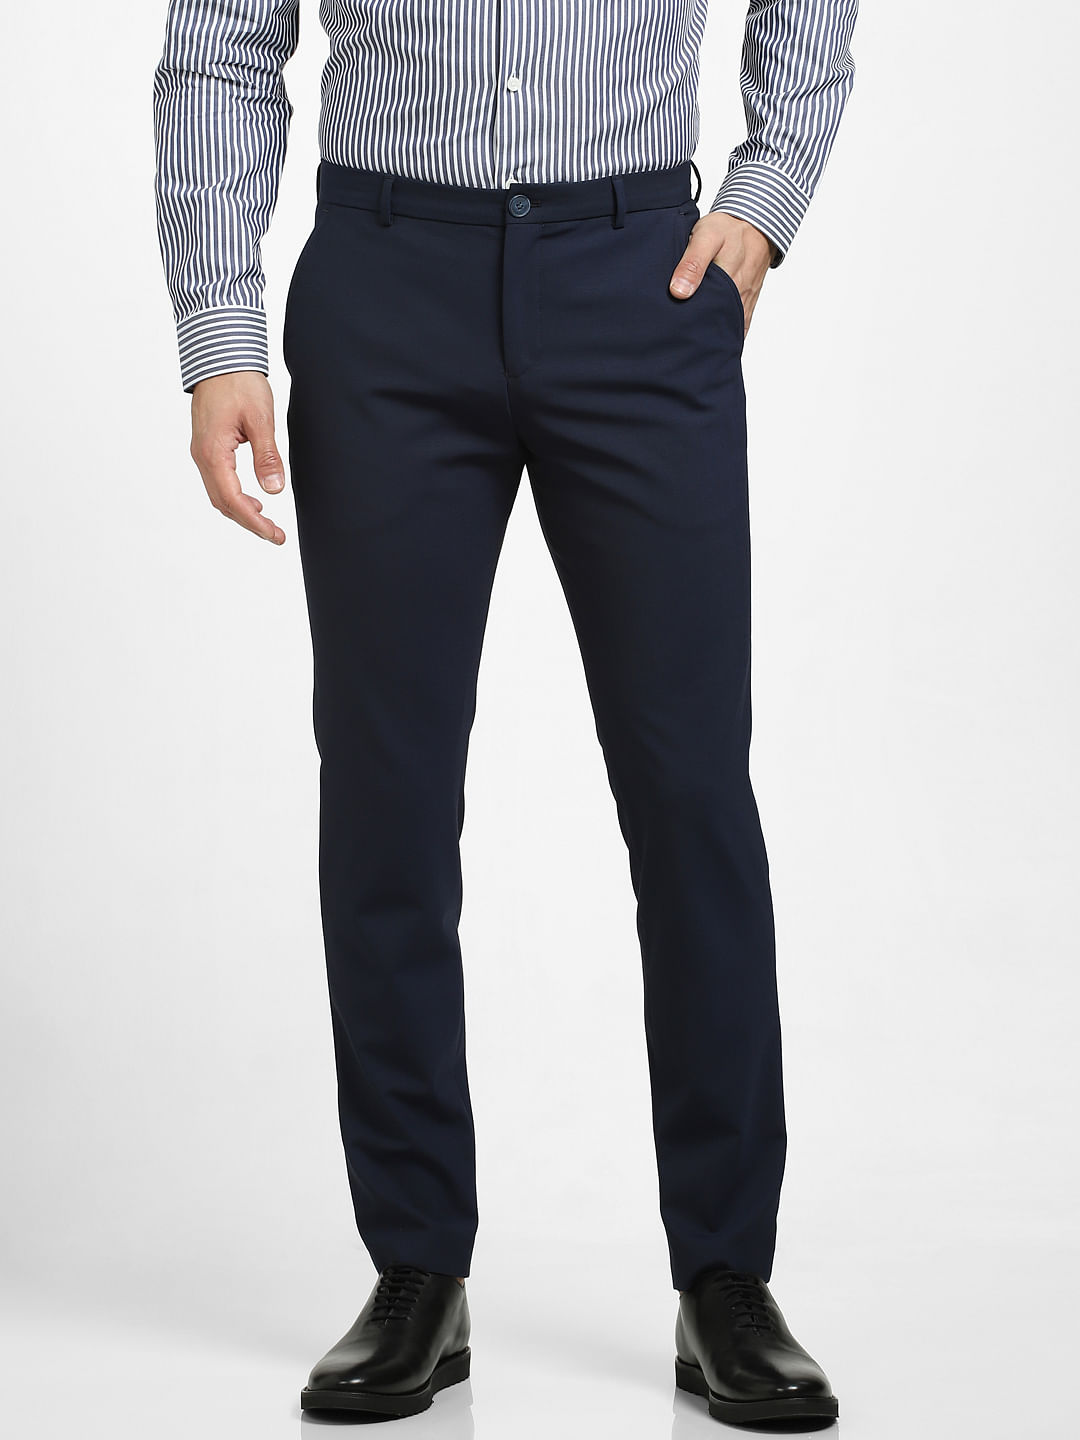 Men's Royal Blue Twill Slim Fit Suit Pants